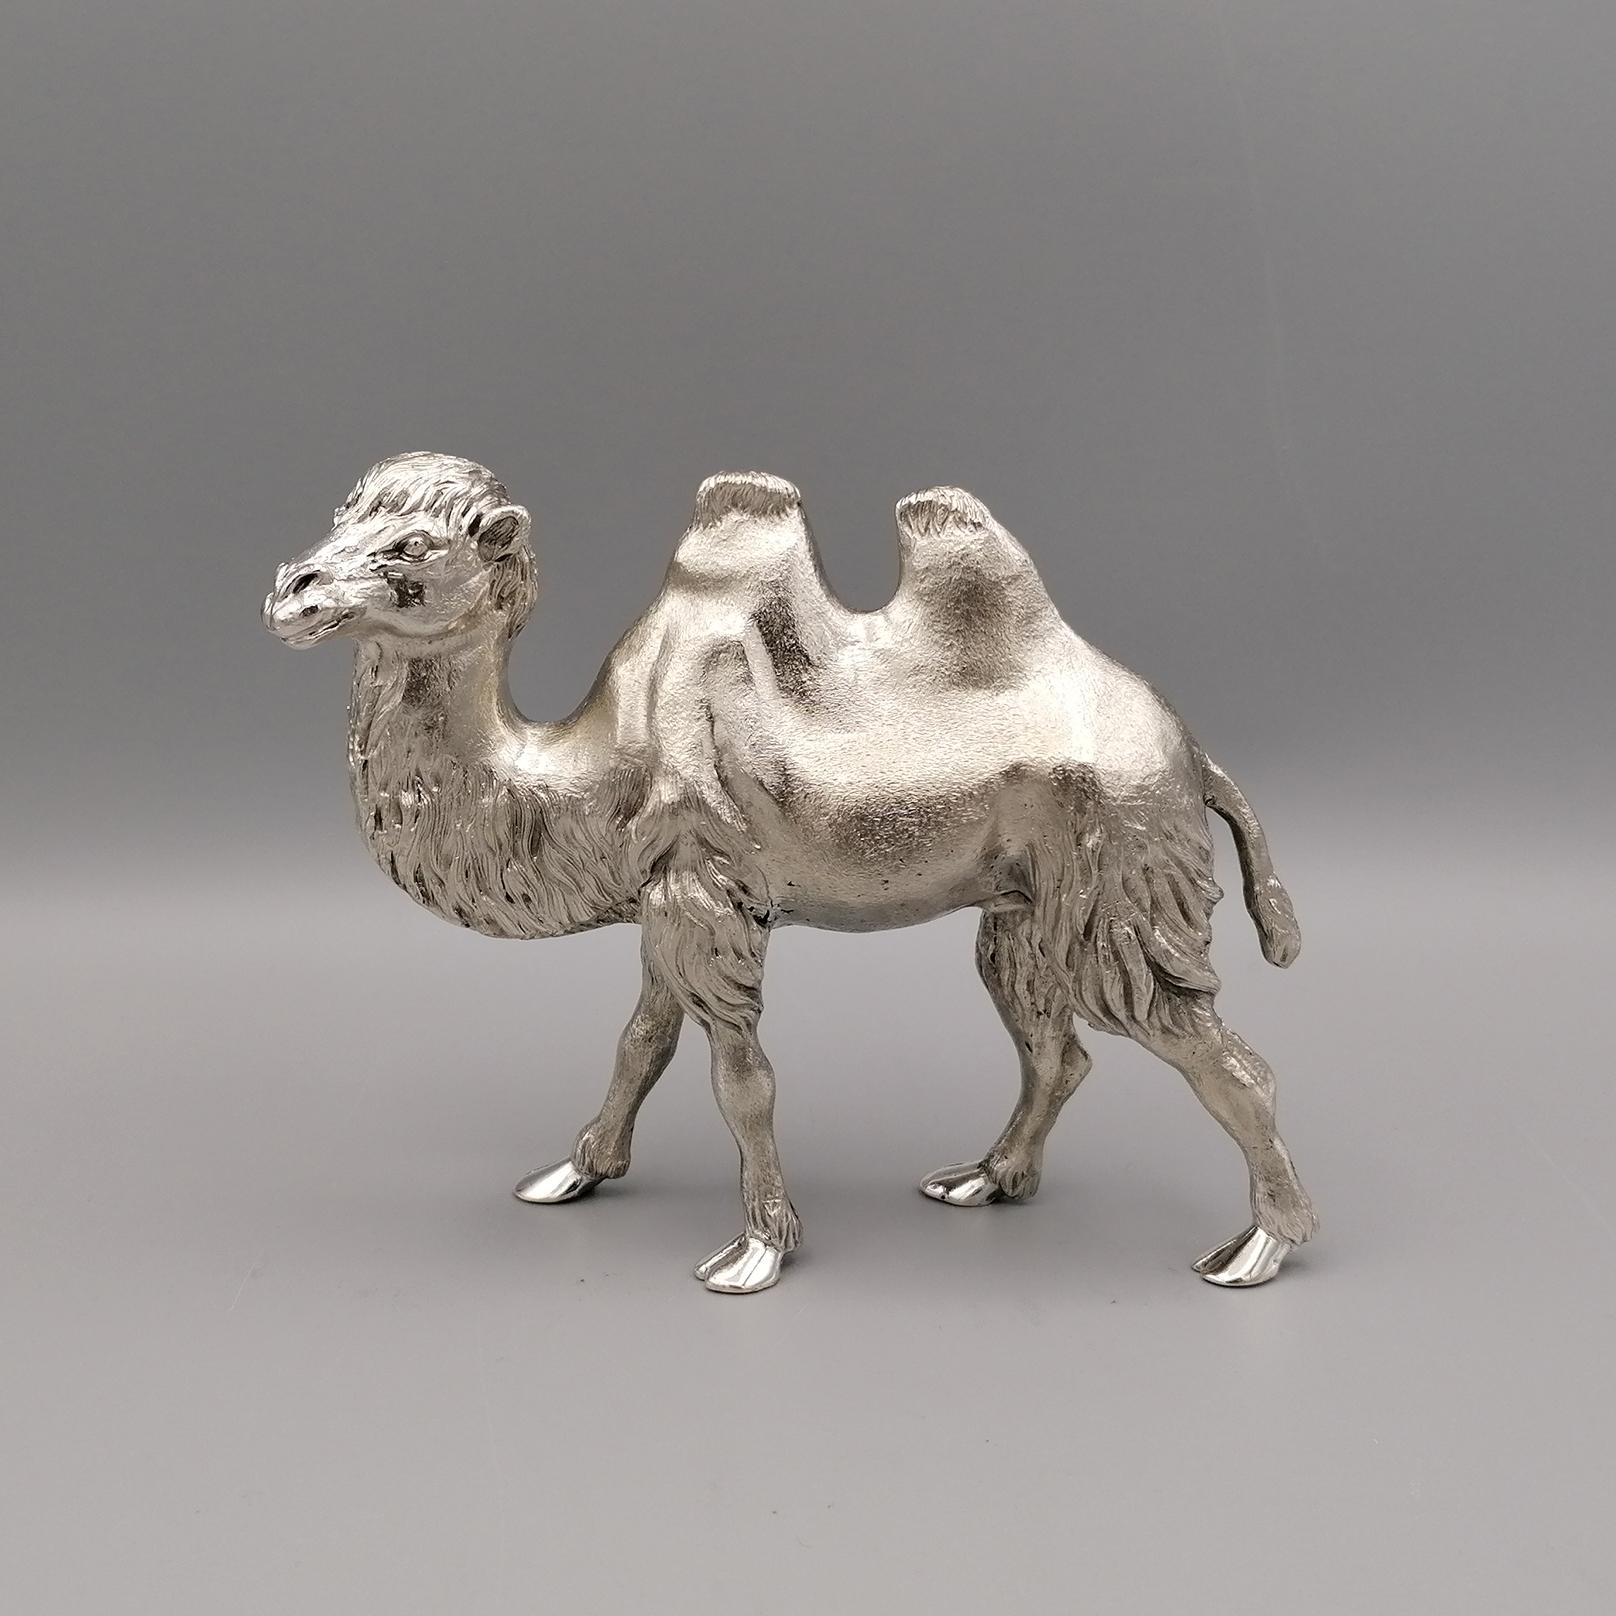 Massiv 800 Silber Kamel.
Die Skulptur wurde im Gussverfahren hergestellt und anschließend von erfahrenen Ziseleuren von Hand bearbeitet, um das Fell des Kamels und die gesamte Skulptur realistisch zu gestalten.

Von Argenteria Ranzoni - Mailand -